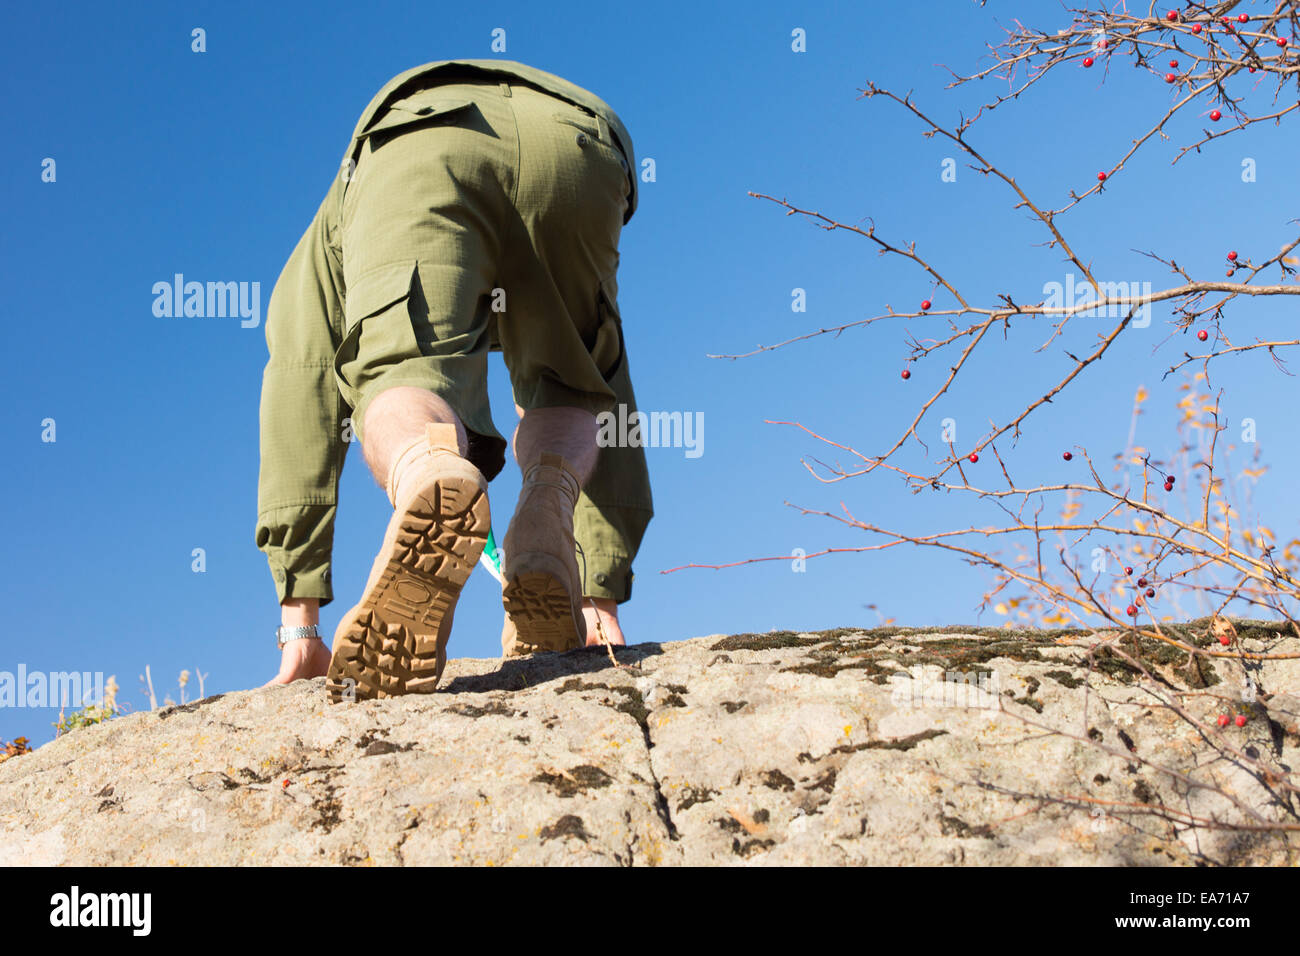 Vue arrière du White boy-scout en uniforme l'ascension d'une grosse pierre sur un climat ensoleillé. Capturé avec fond de ciel bleu clair. Banque D'Images